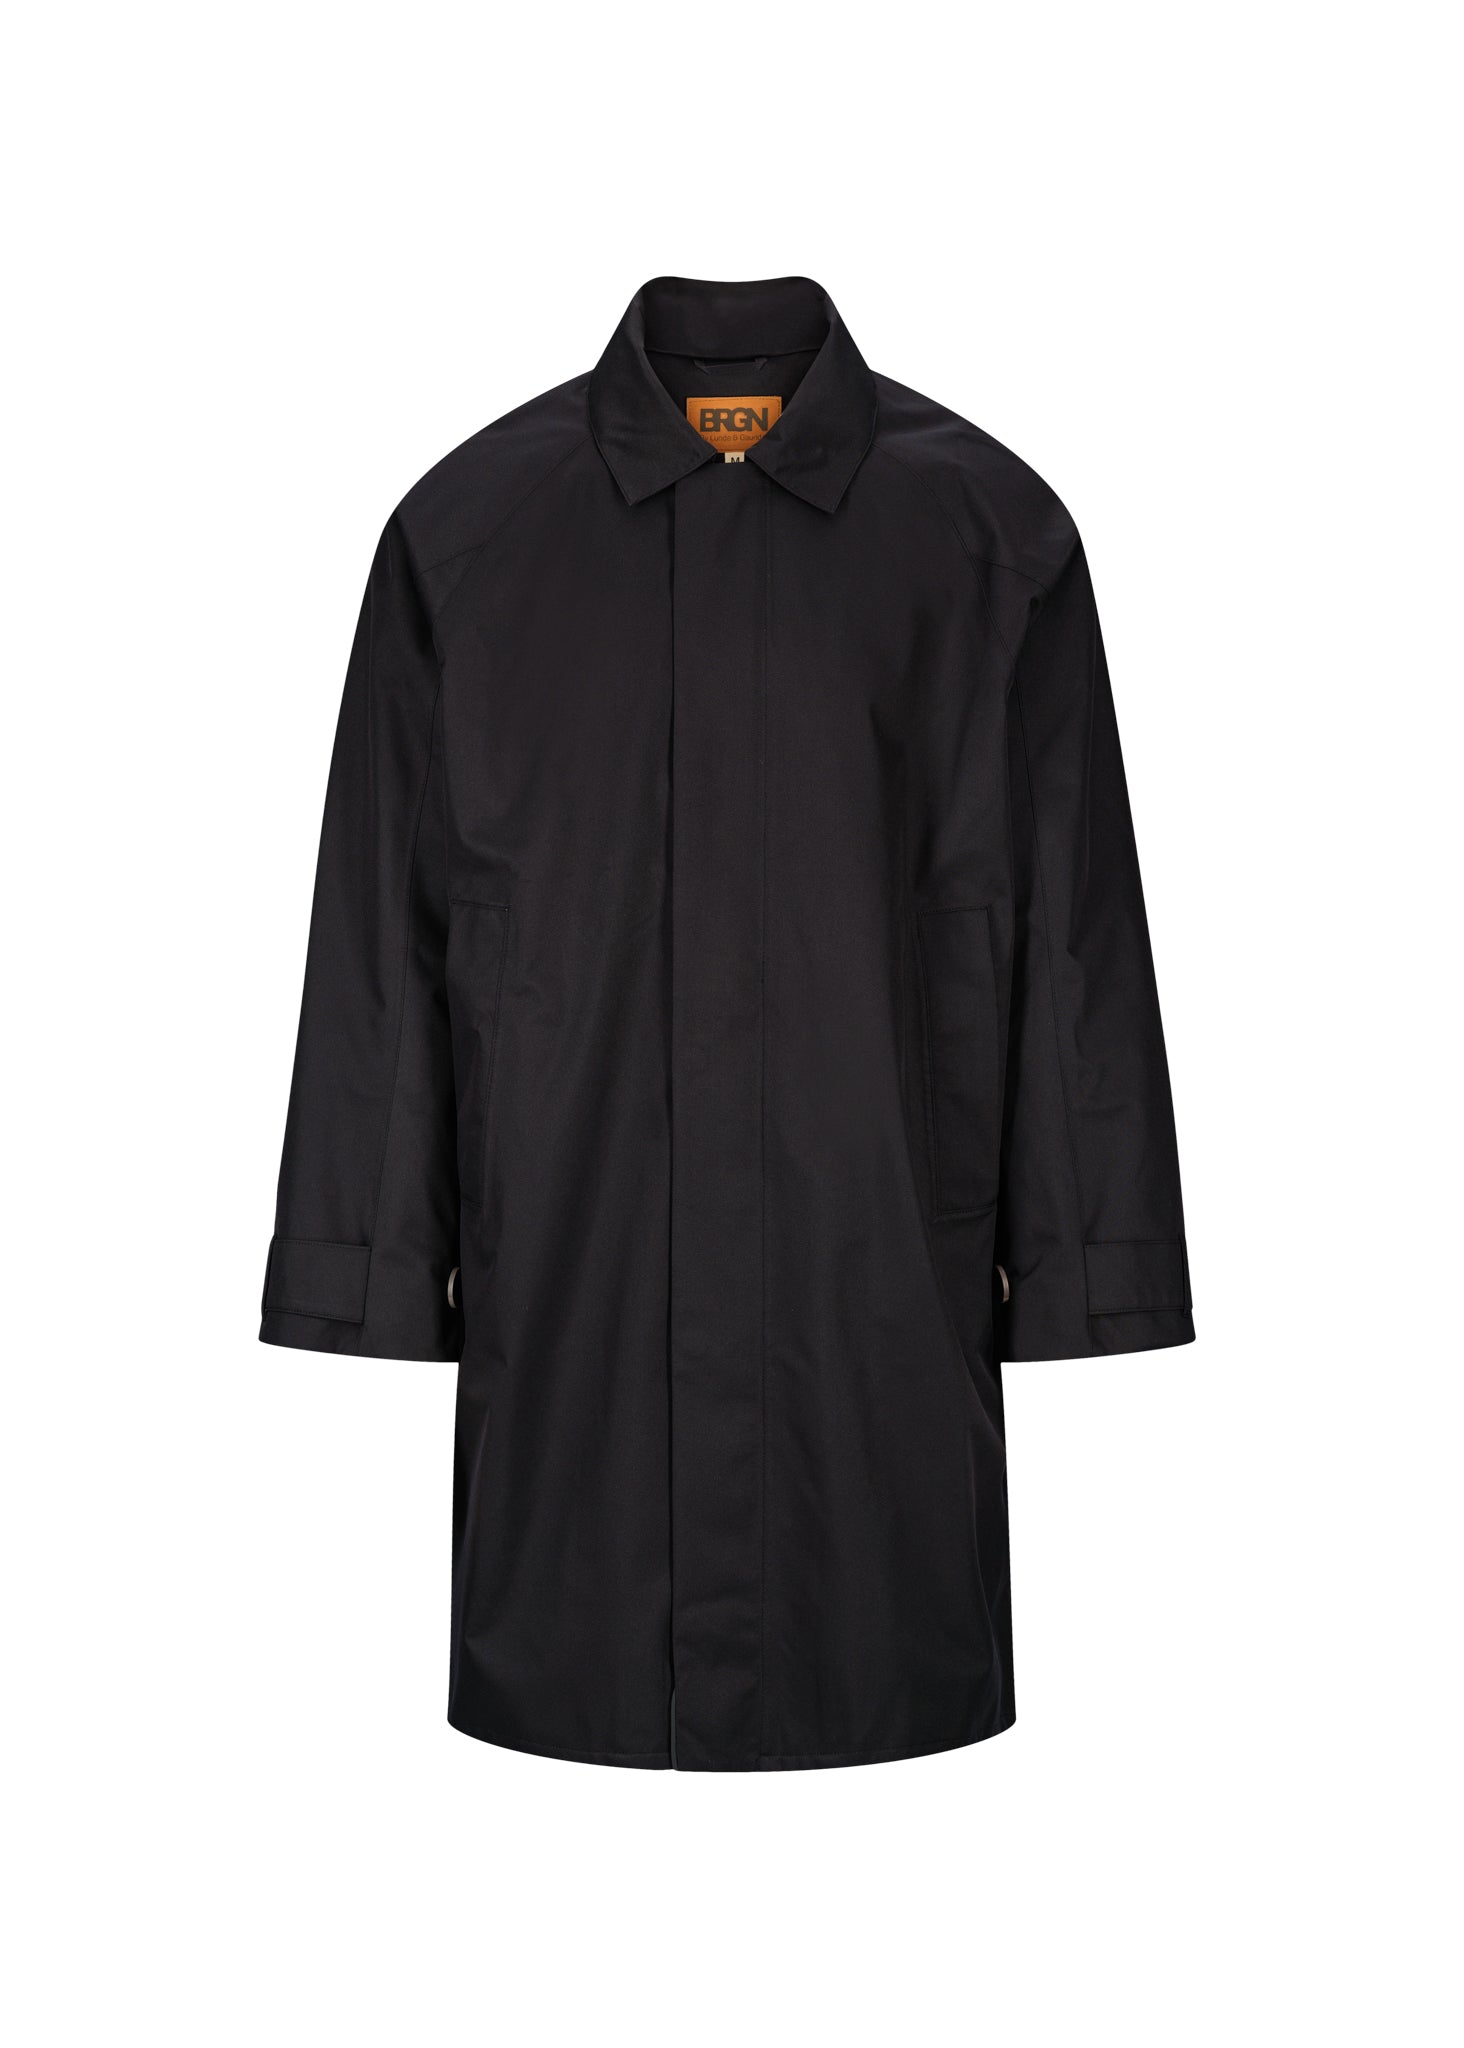 BRGN Vind Coat Coats 095 New Black